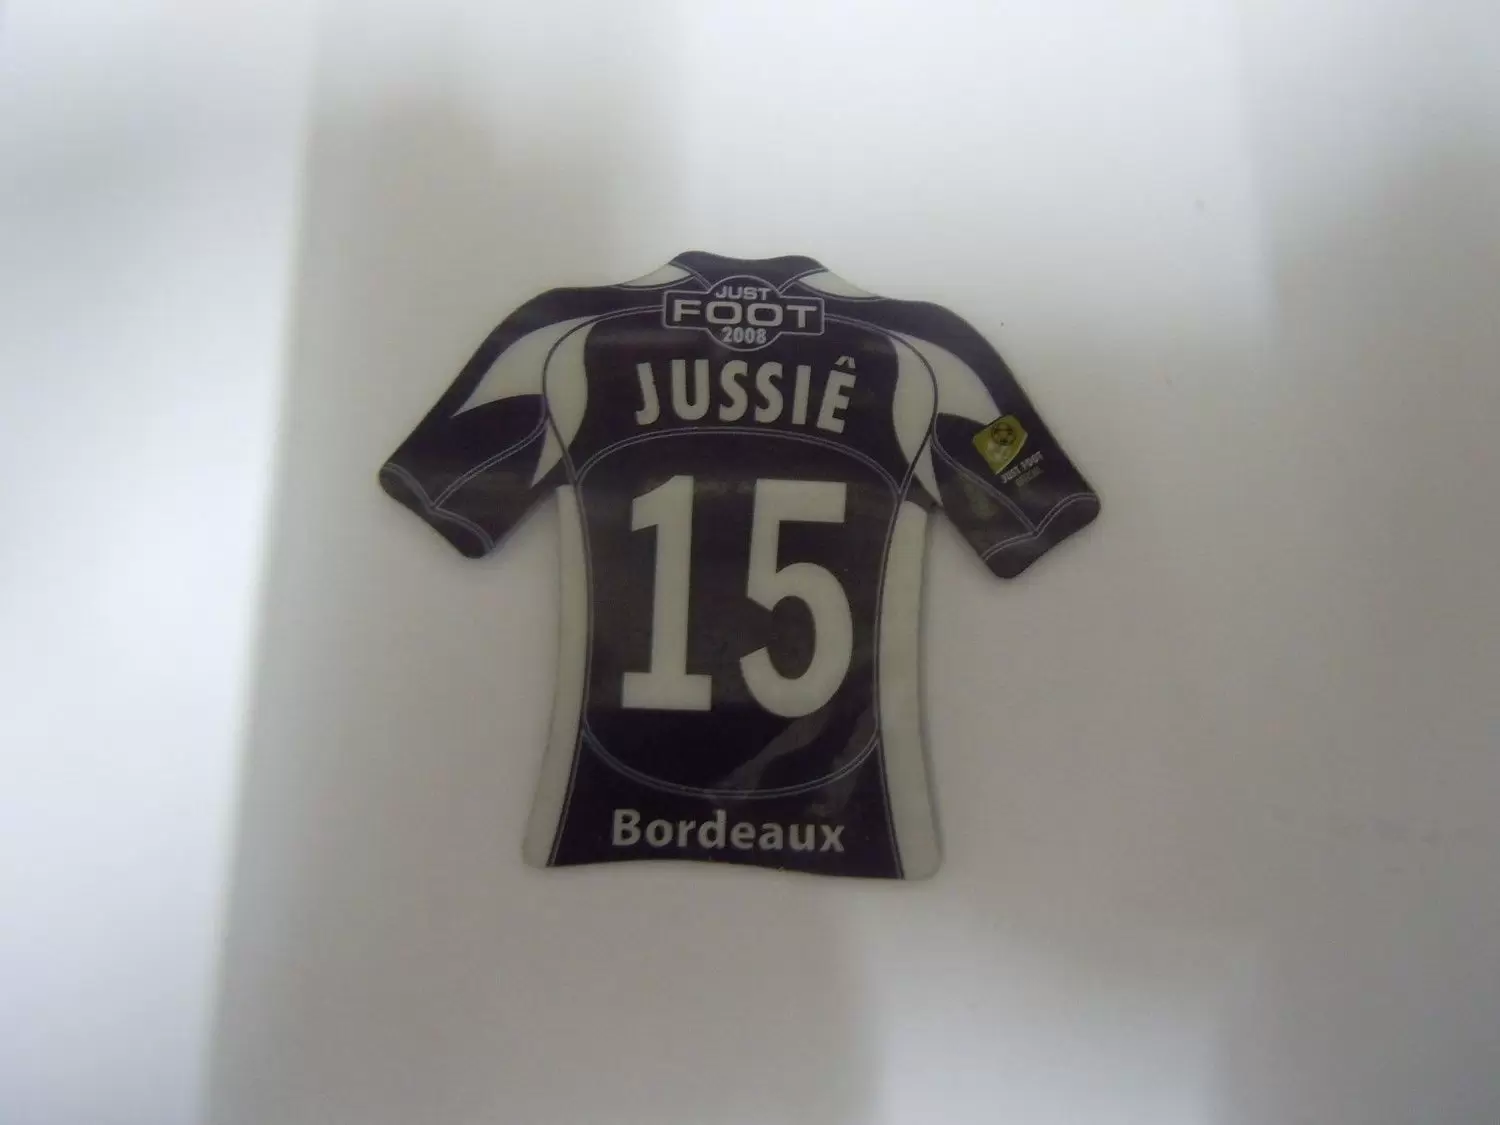 Just Foot 2008 - Bordeaux 15 - Jussiê